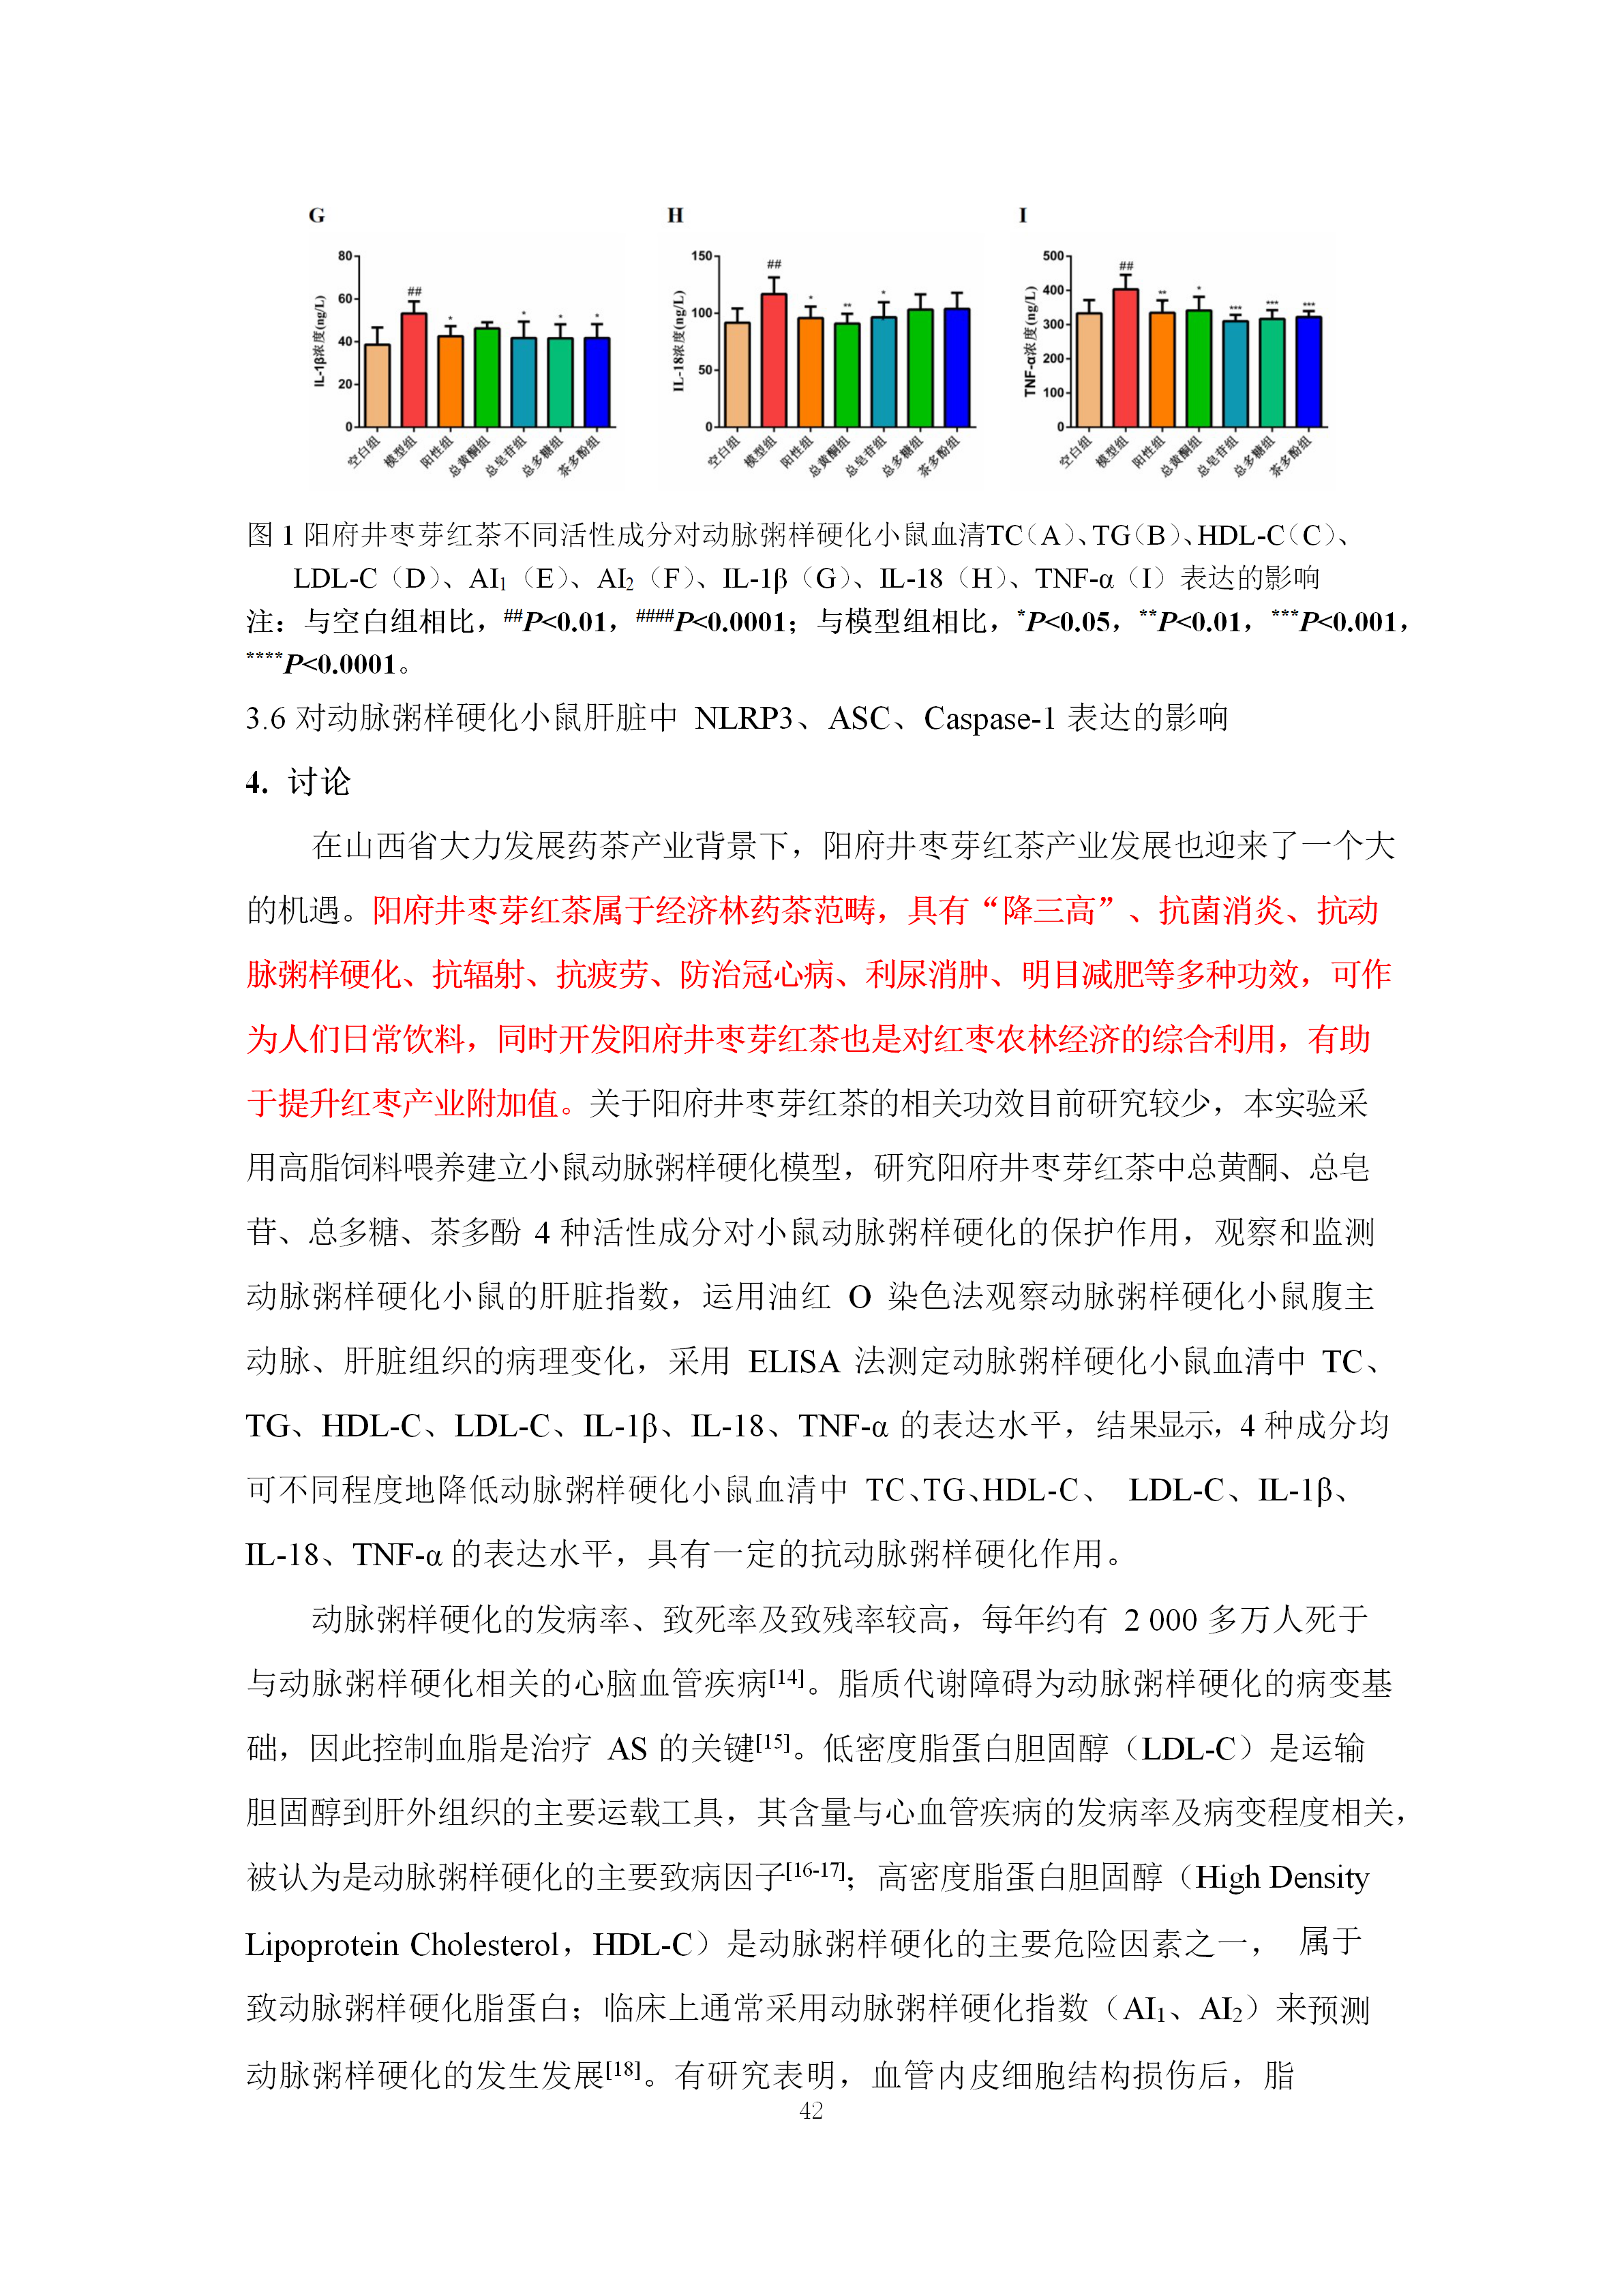 阳府井枣芽红茶功效学试验技术报告8.6.2(1)(1)(1)(1)(1)(1)_45.png